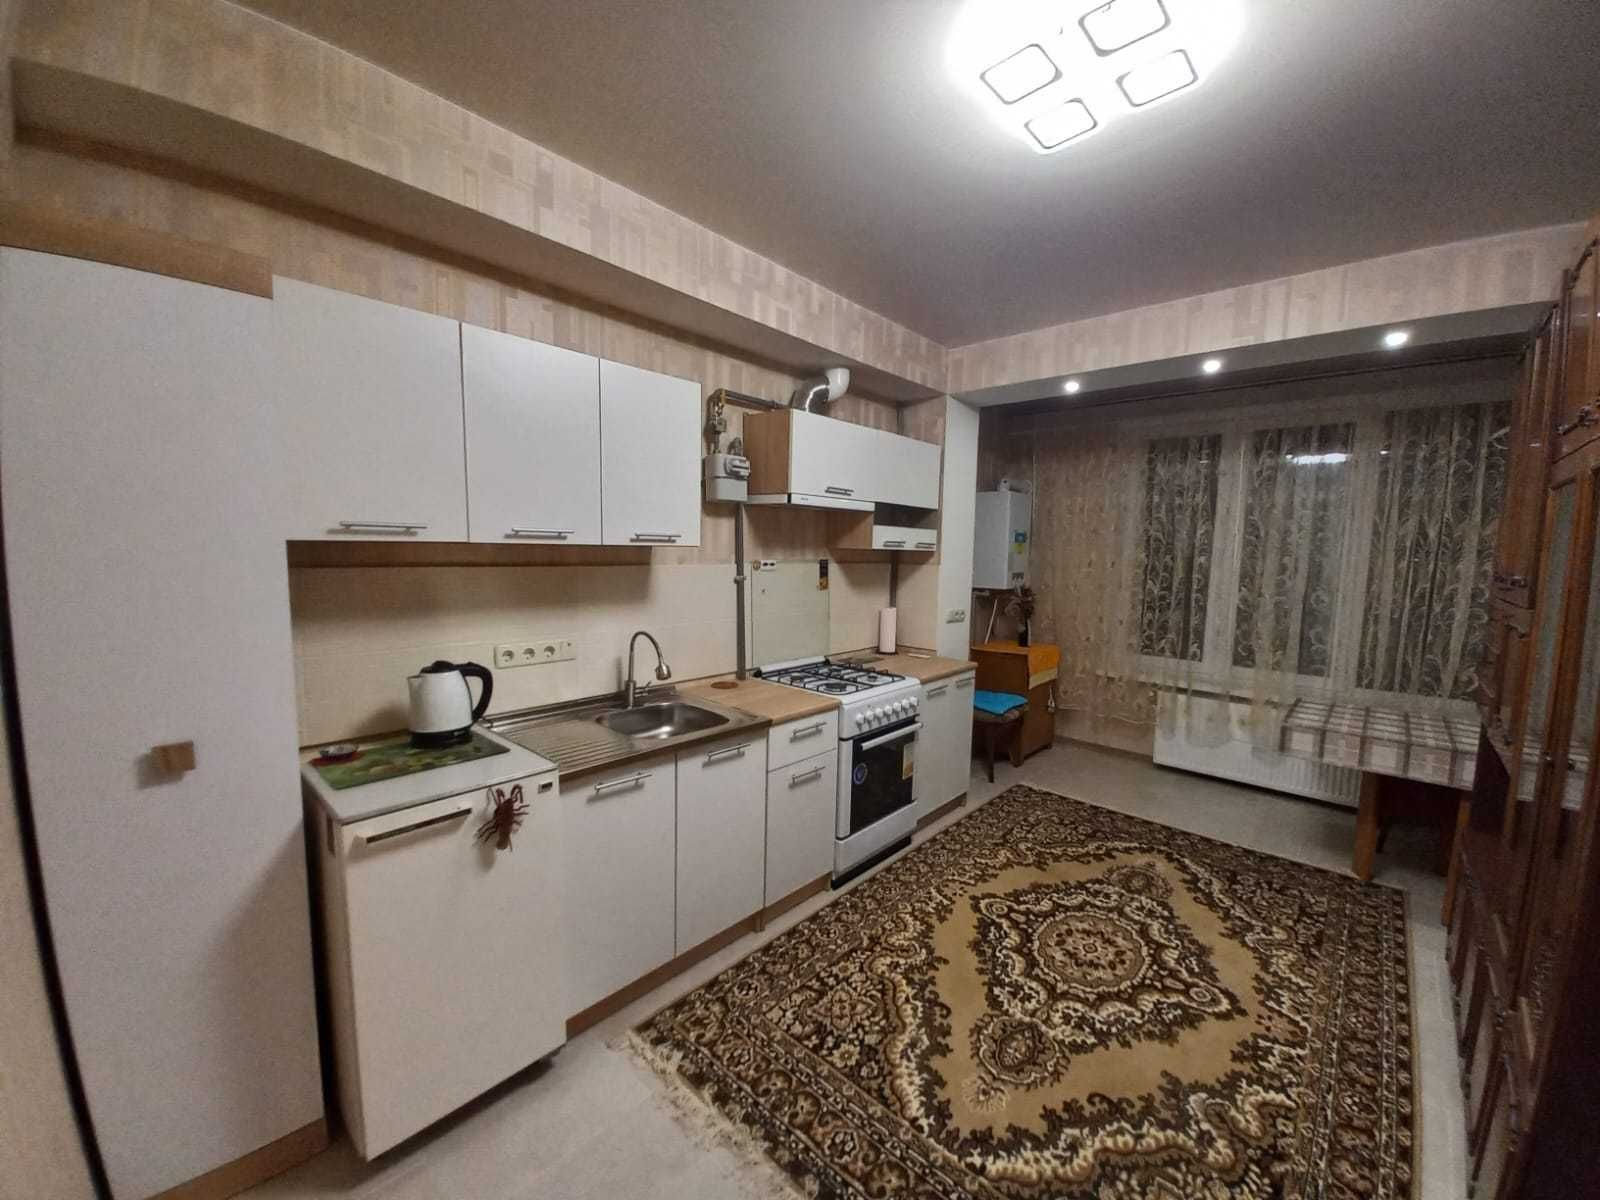 1-к квартира з кухнею студією у жк "Волкова 3В", хазяїн, перша здача.